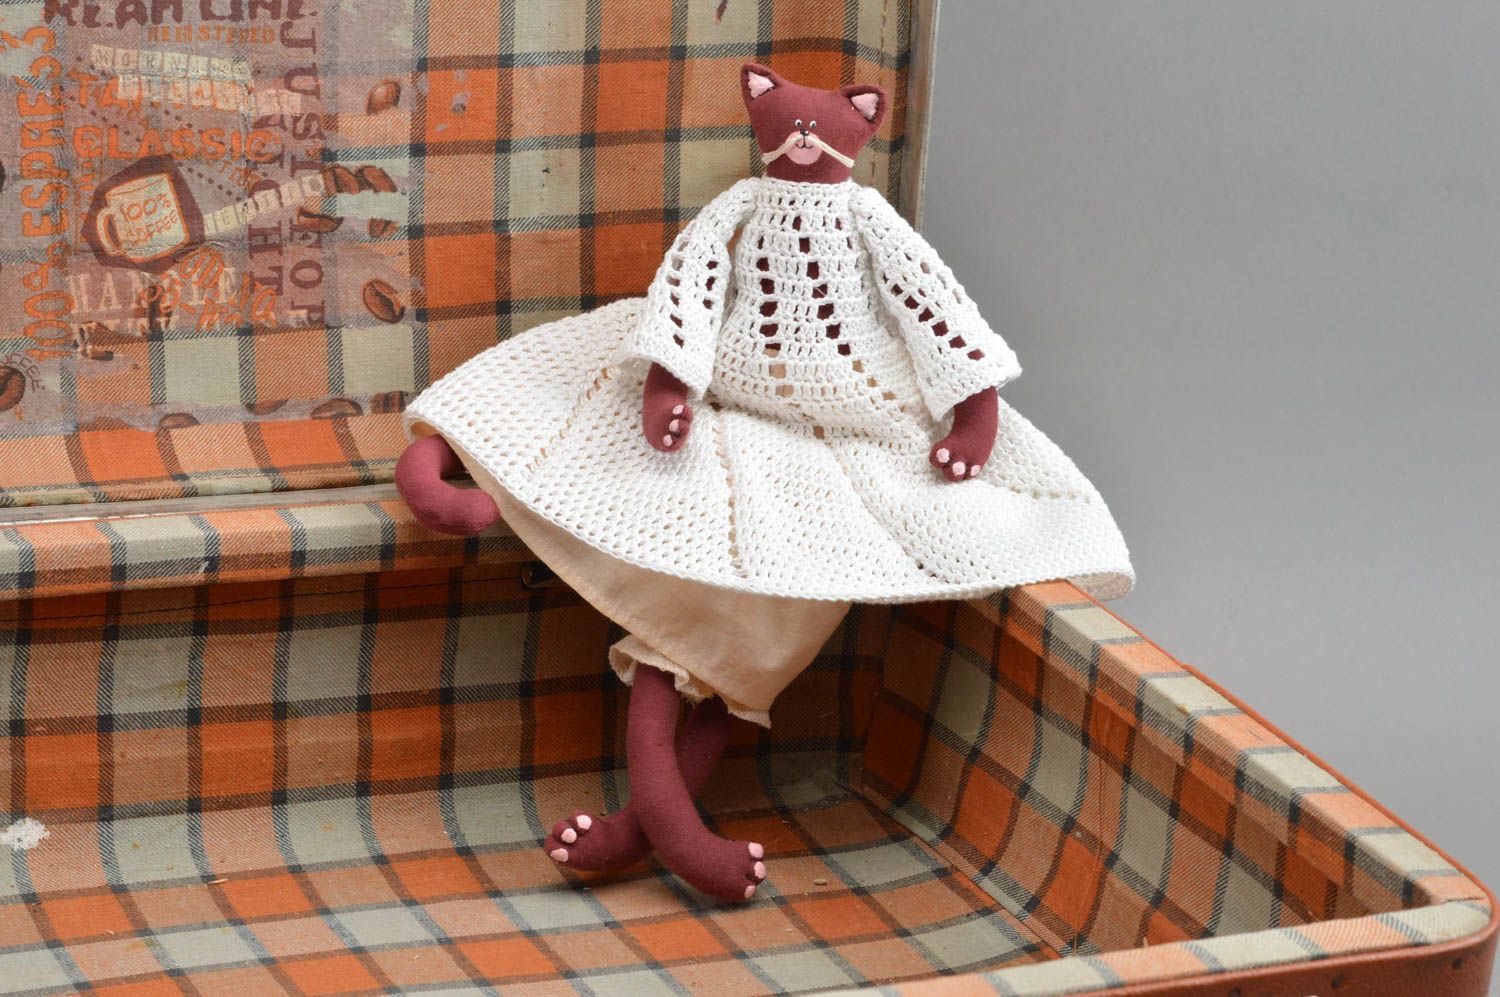 Textil Kuscheltier Katze bordeauxrot im gehäkelten Kleid klein schön handmade foto 1